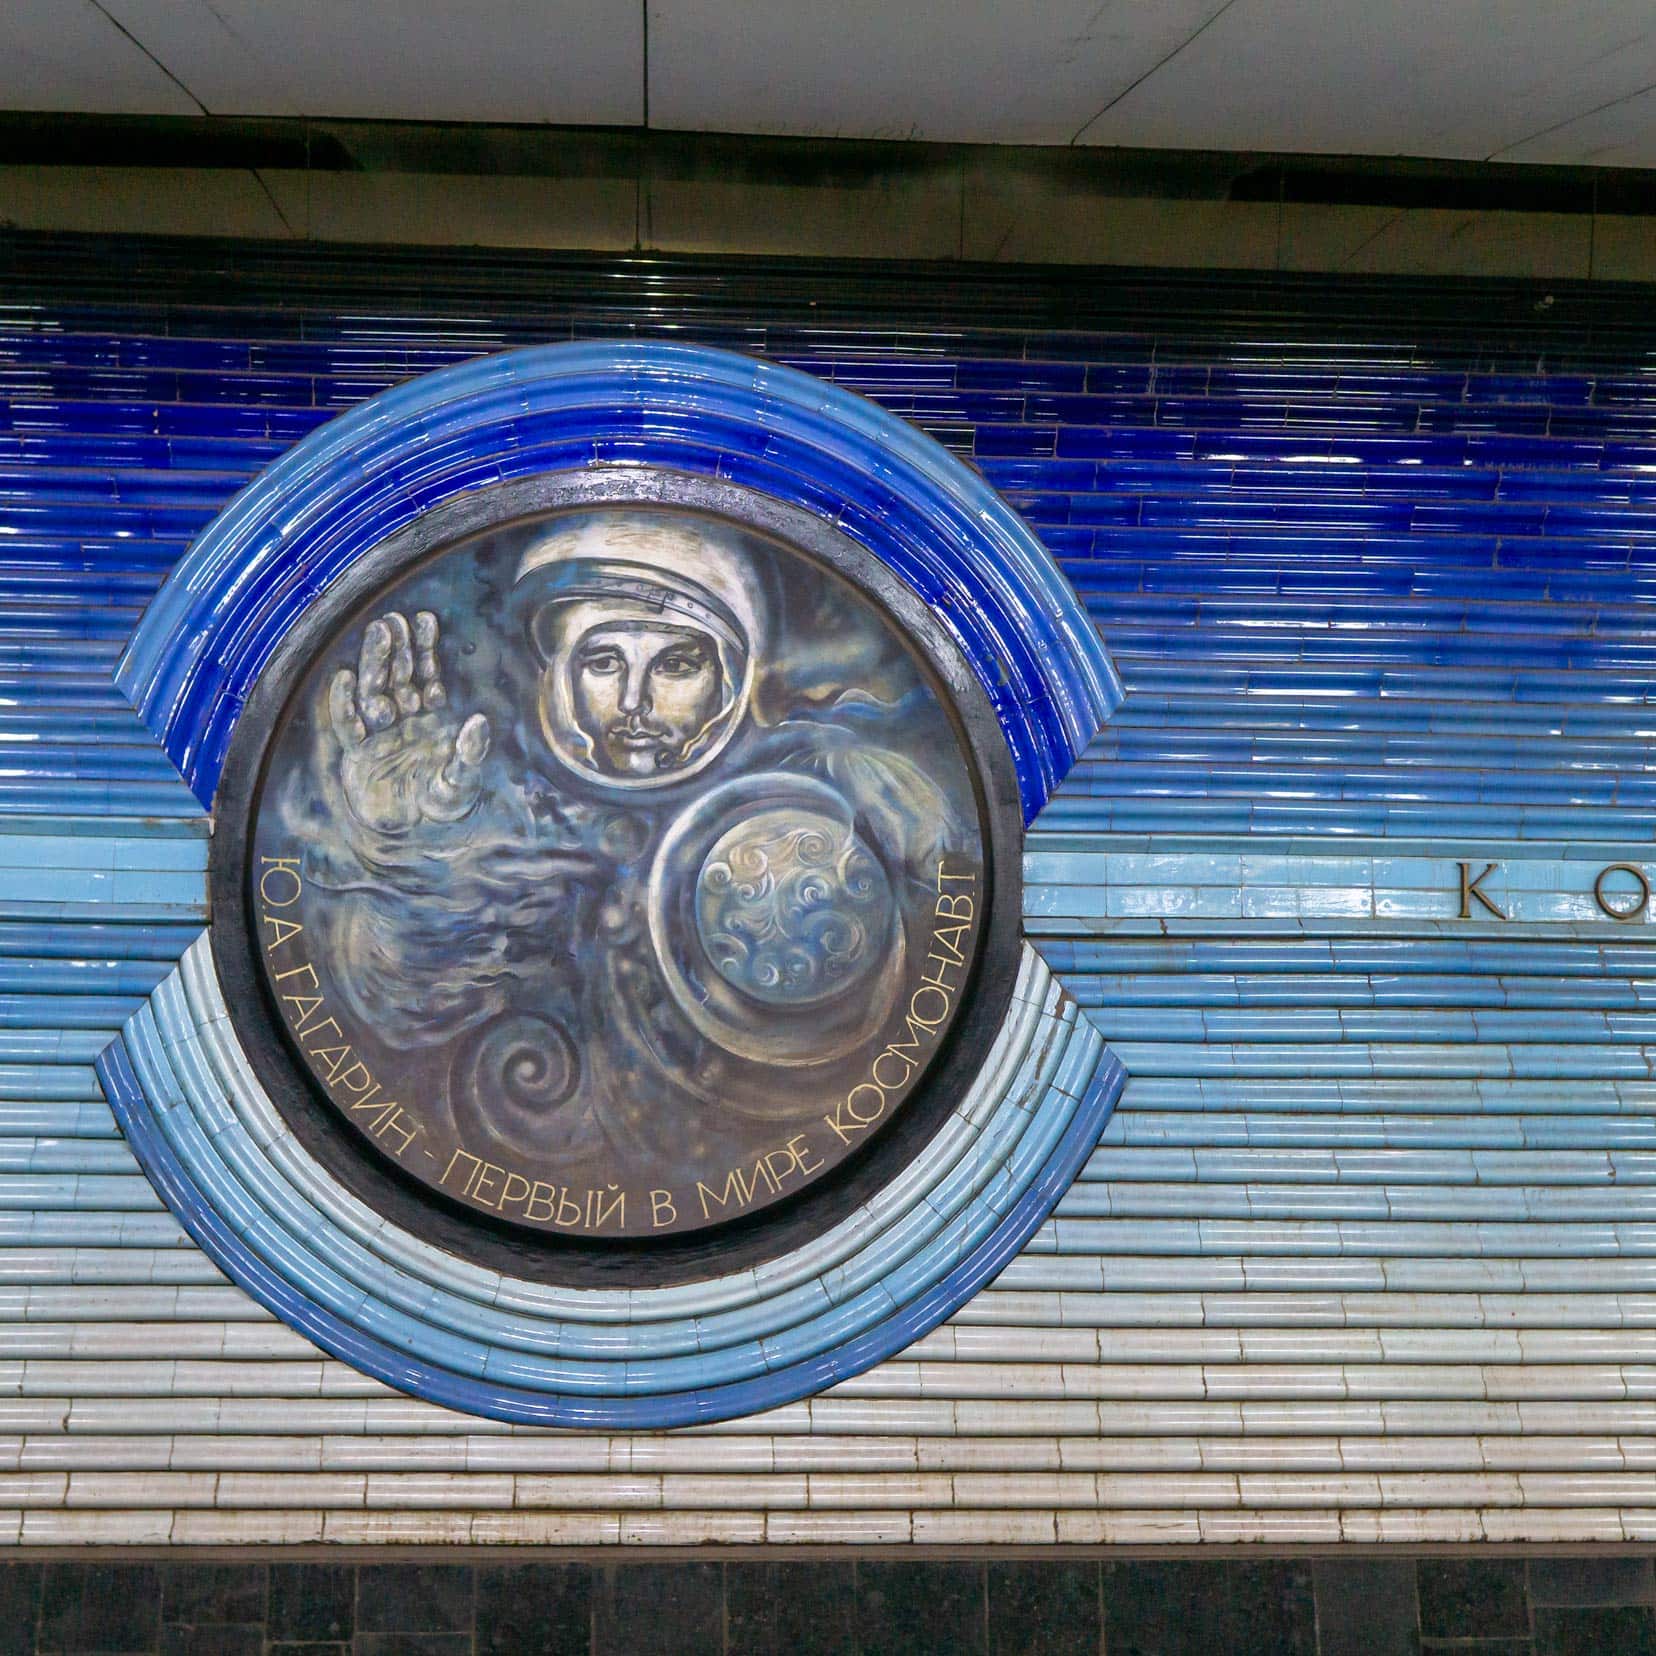 Kosmonavtlar metro mural_1, tashkent